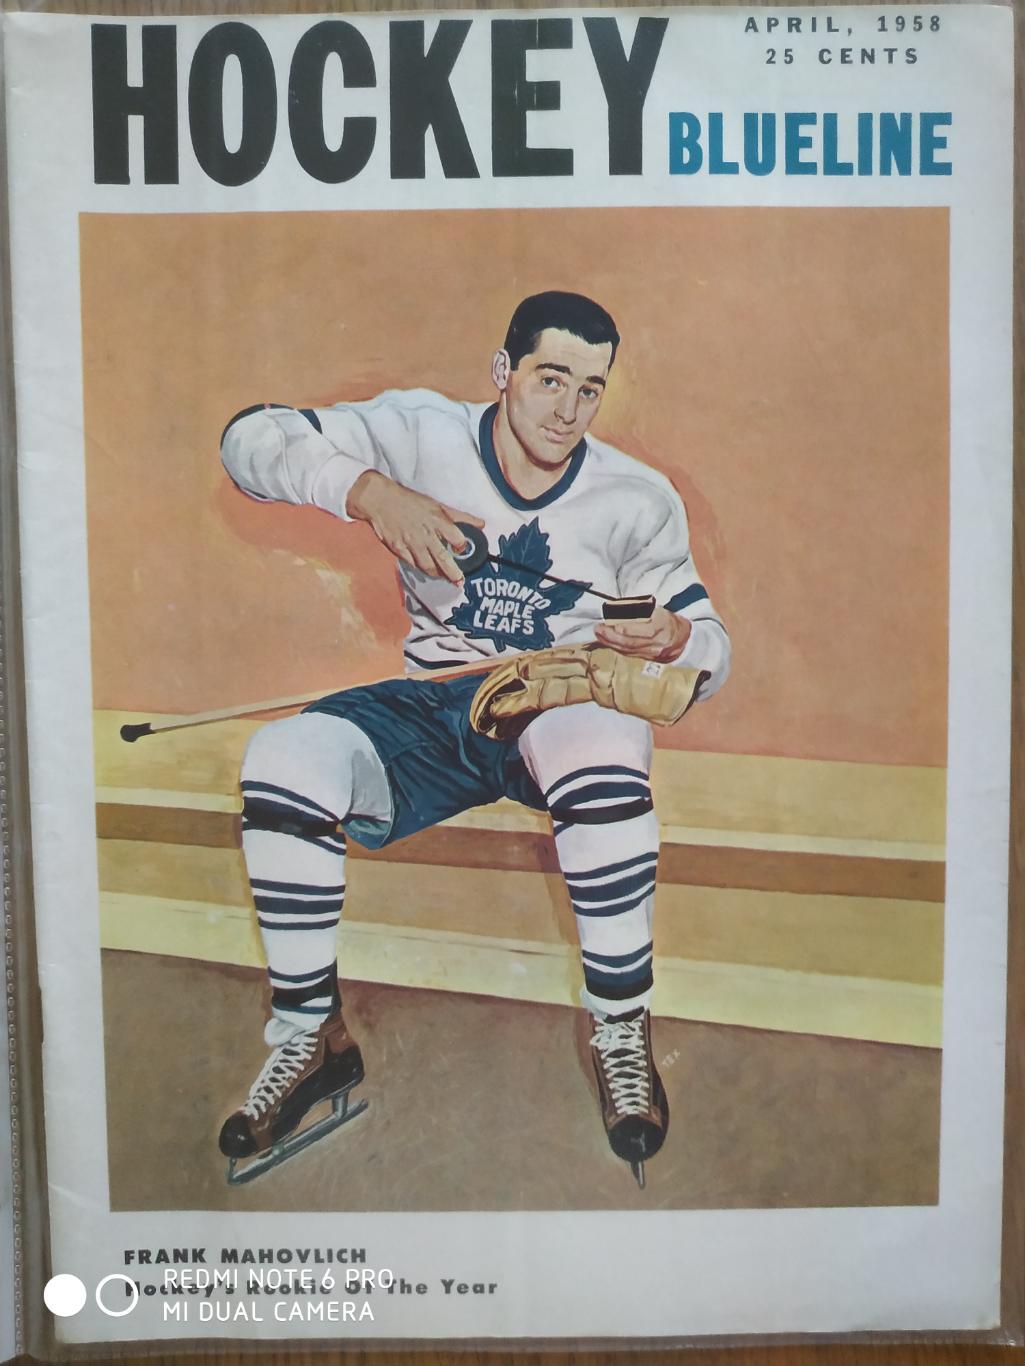 ЖУРНАЛ ЕЖЕМЕСЯЧНИК НХЛ NHL 1958 APRIL THE HOCKEY MONTHLY BLUELINE